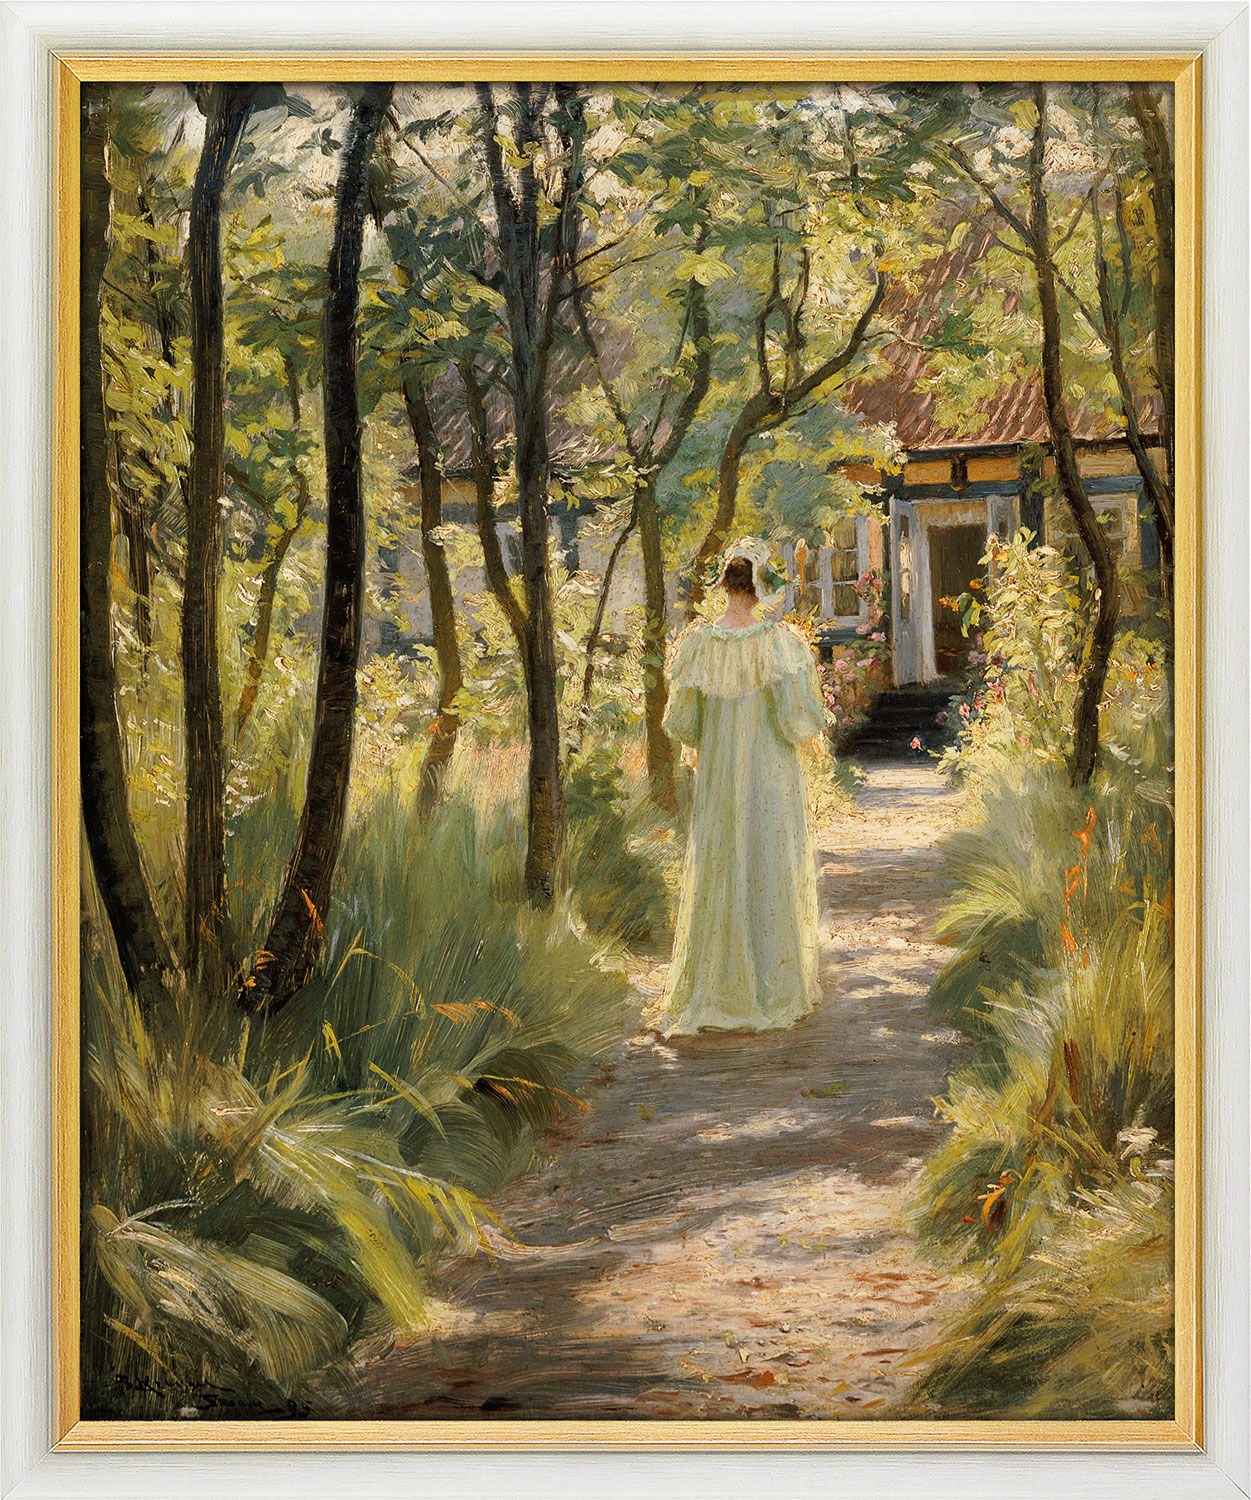 Tableau "Marie, la femme de l'artiste, dans le jardin" (1895), encadré von Peder Severin Kroyer